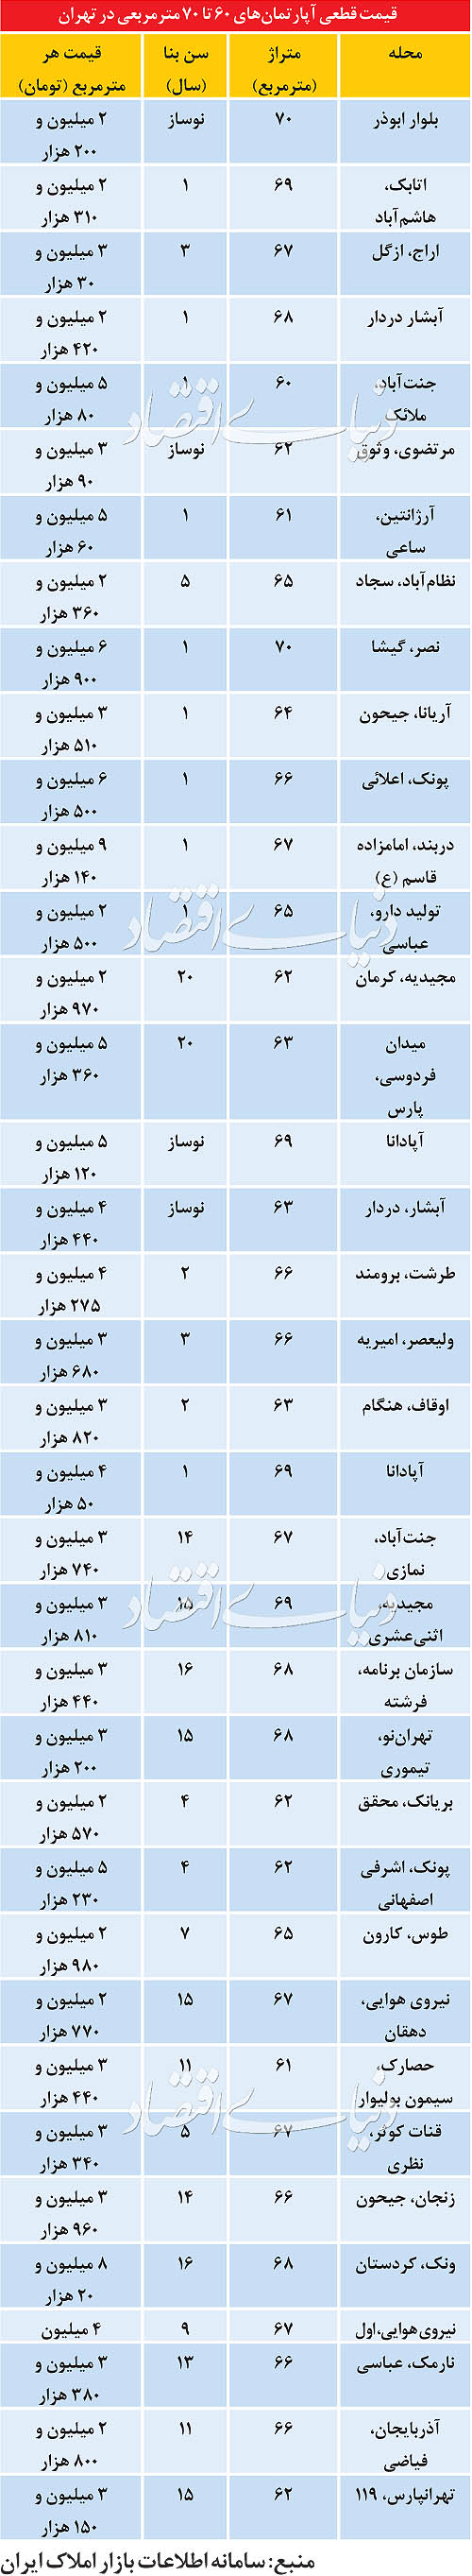 قیمت آپارتمان های 60 تا 70 متری در تهران (جدول)